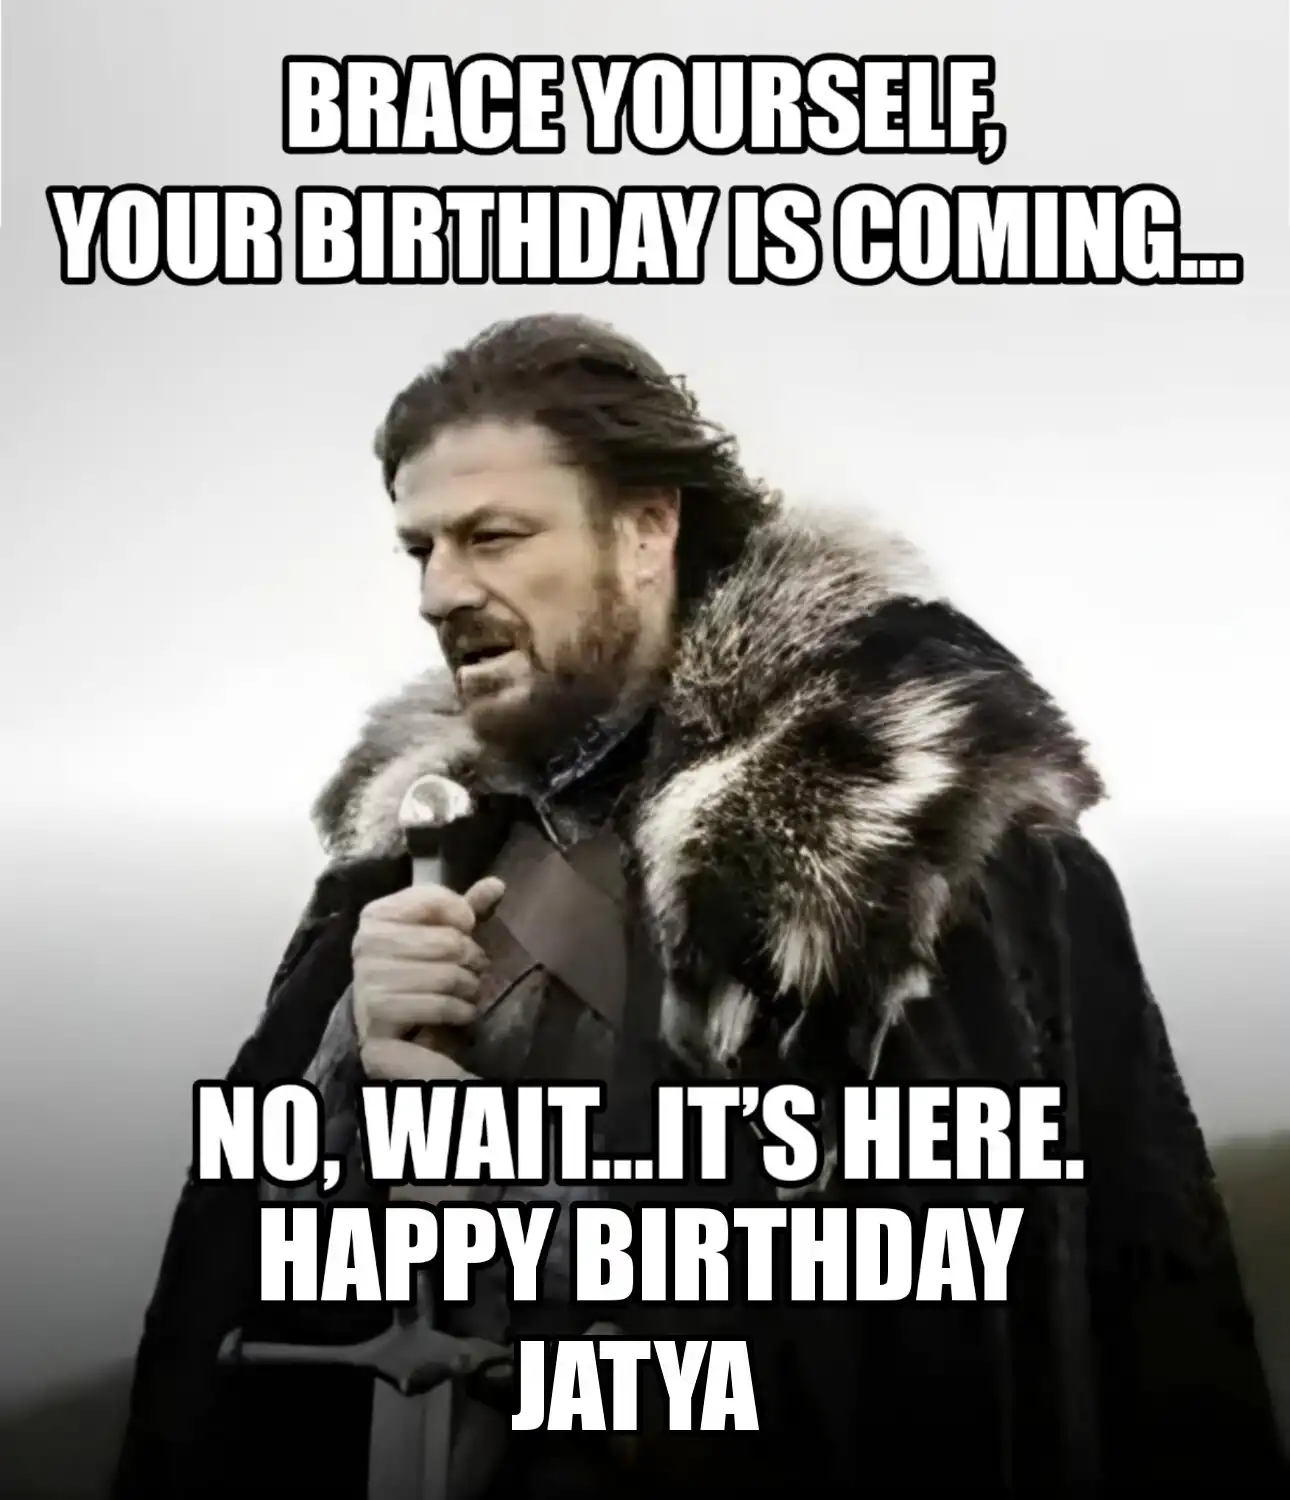 Happy Birthday Jatya Brace Yourself Your Birthday Is Coming Meme